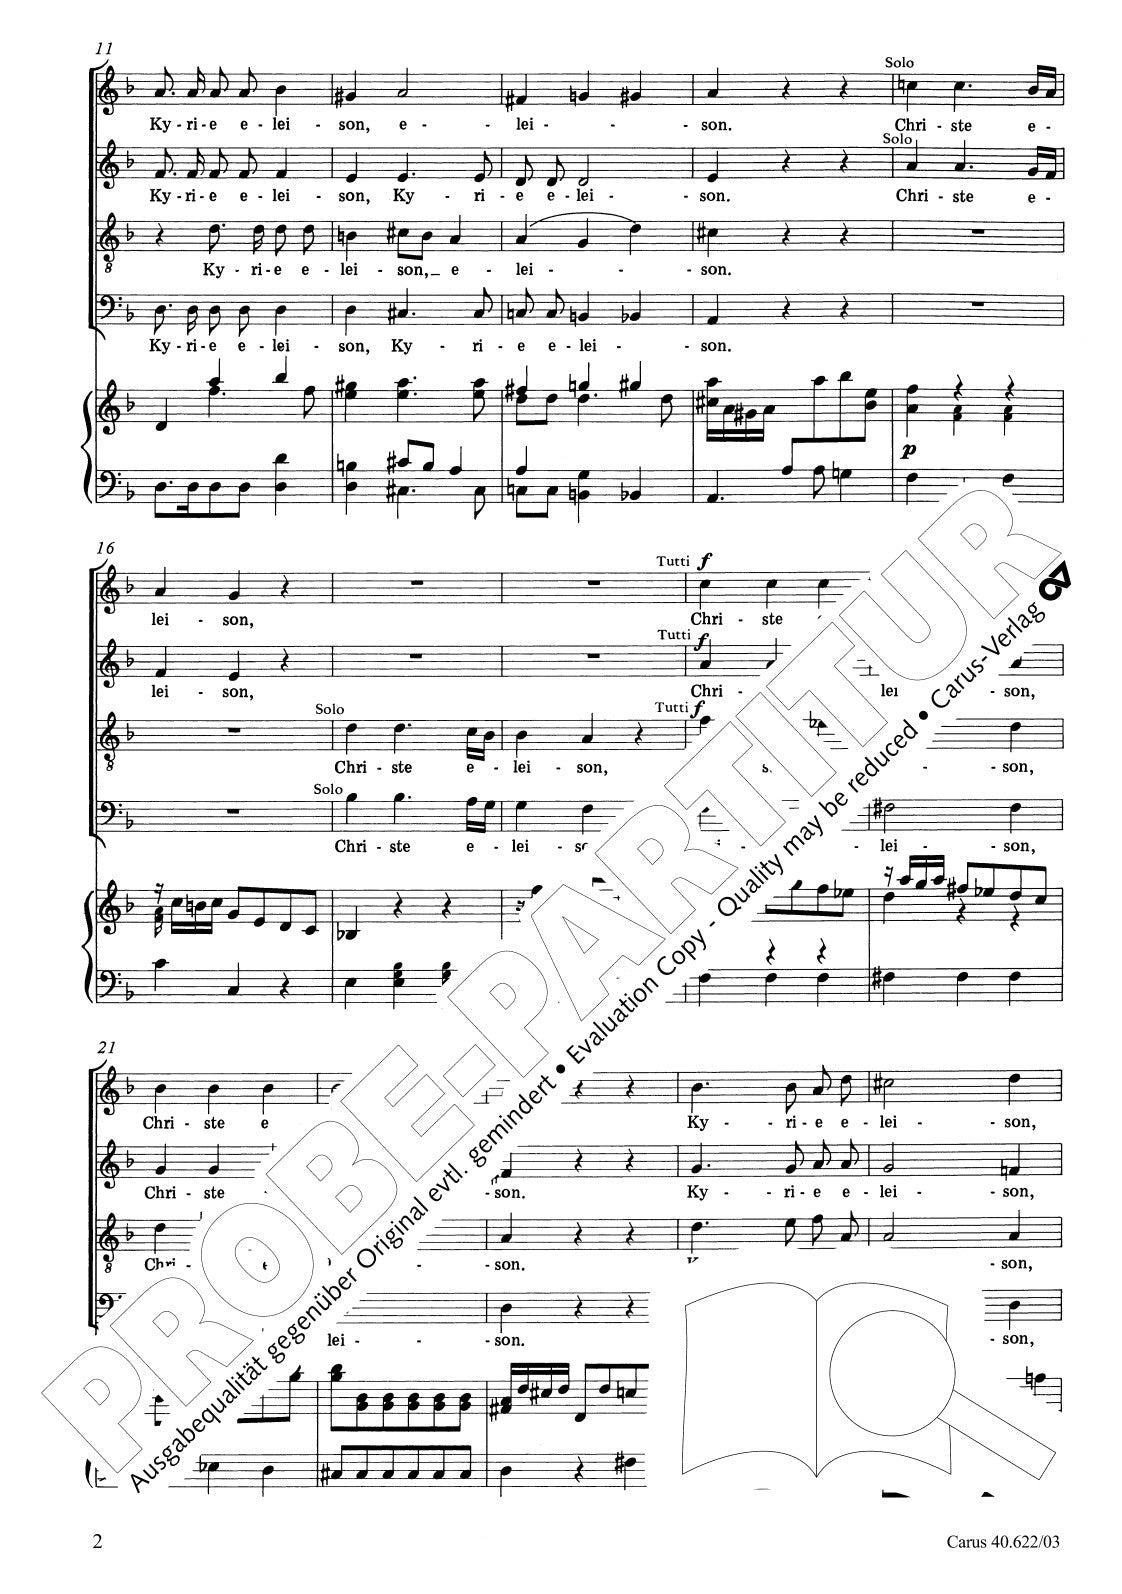 Mozart: Missa brevis in D Minor, K. 65 (61a)